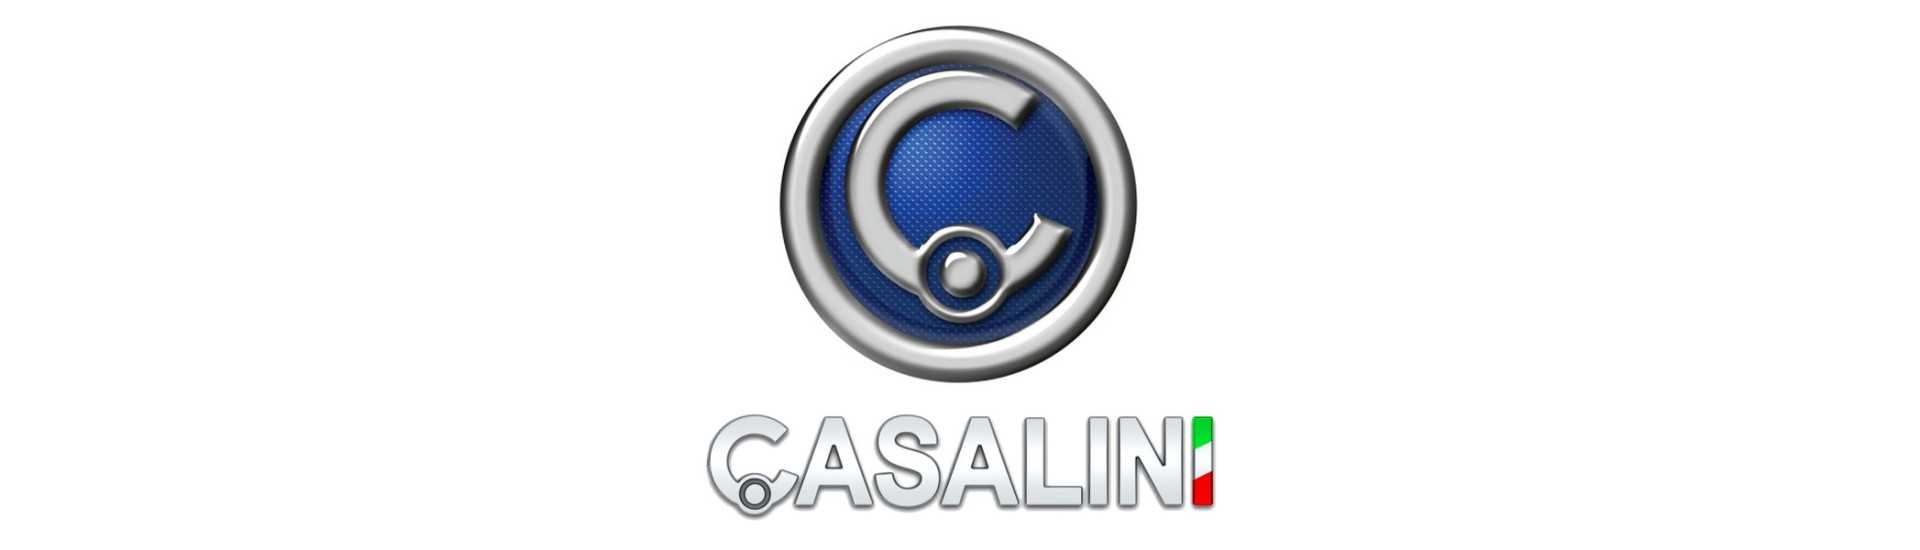 Istorka motor till bästa prisbil utan licens Casalini